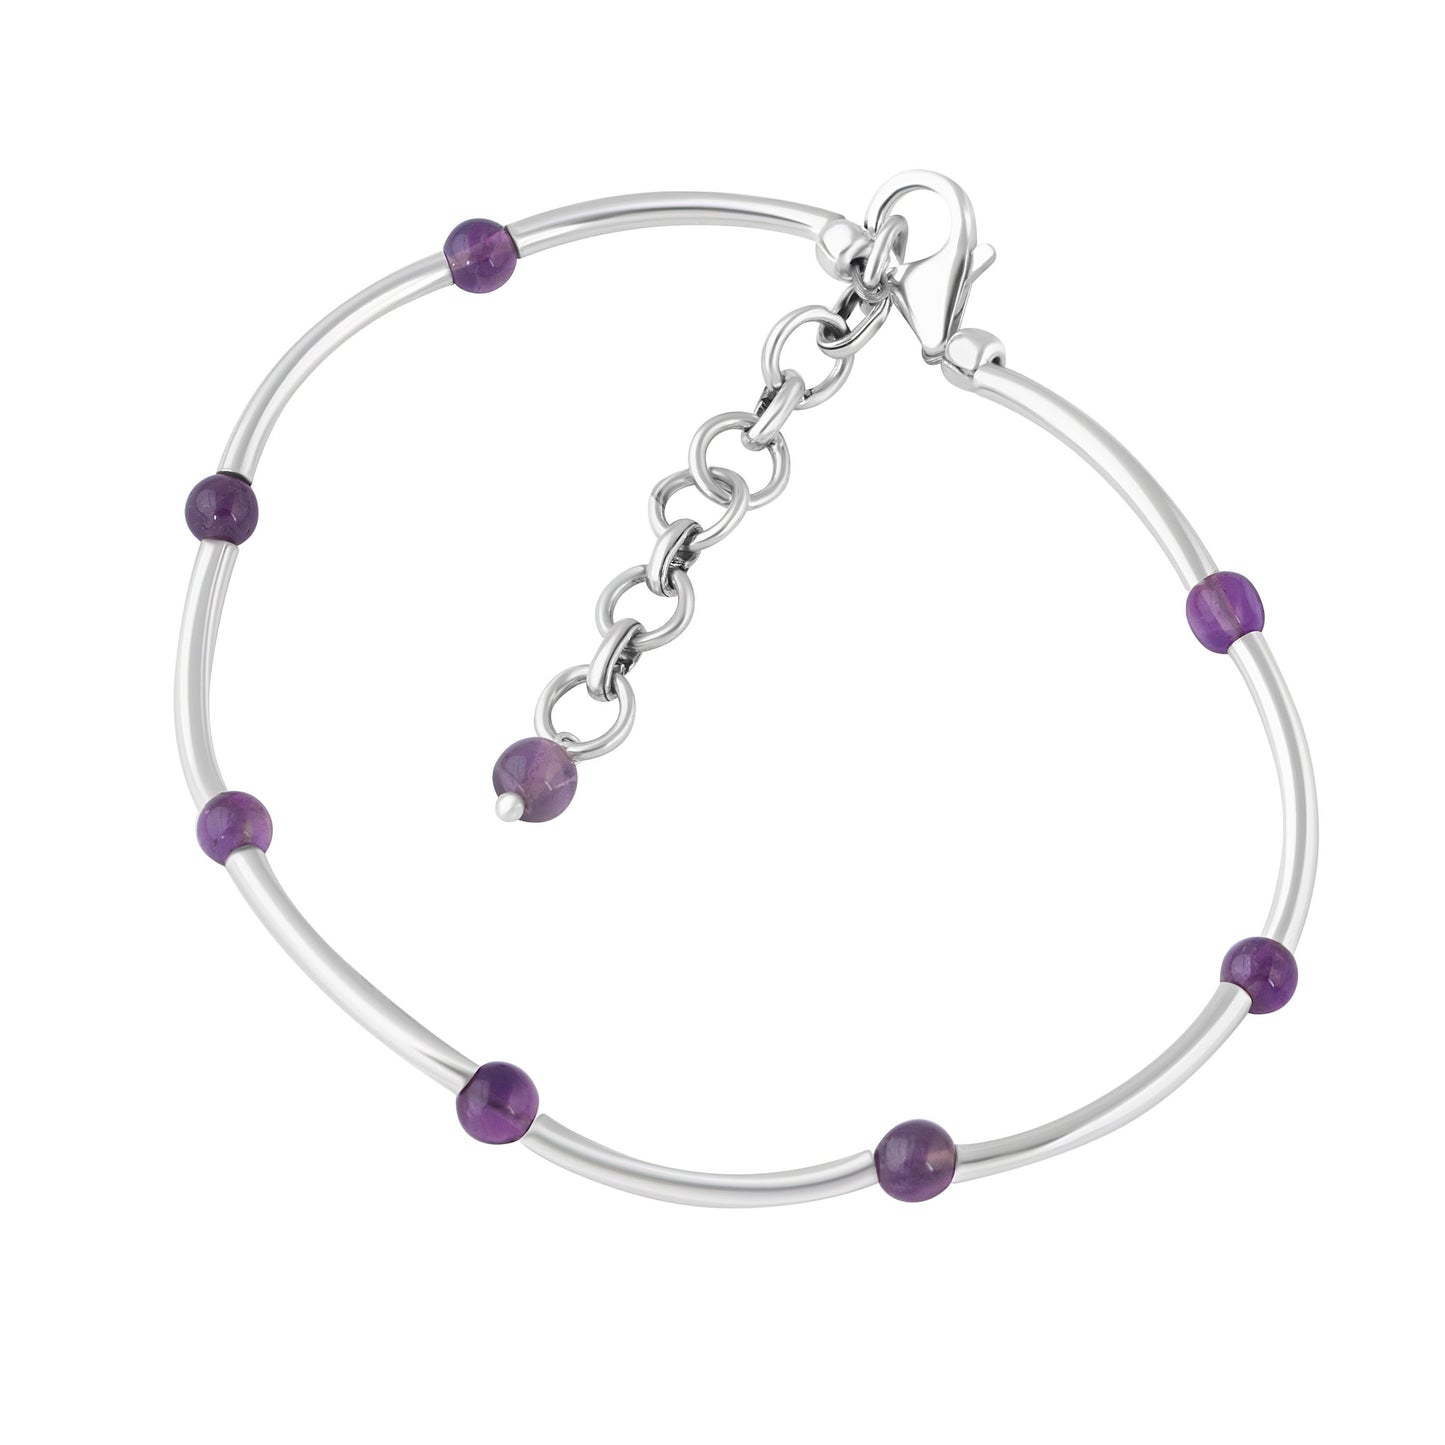 SOLID 925 SILVER tubes Amethyst Gemstones bracelet anklet 7.7", Purple Amethyst Gems 925 Sterling Silver Pipes Bracelet Anklet, Australia, Zorbajewellers